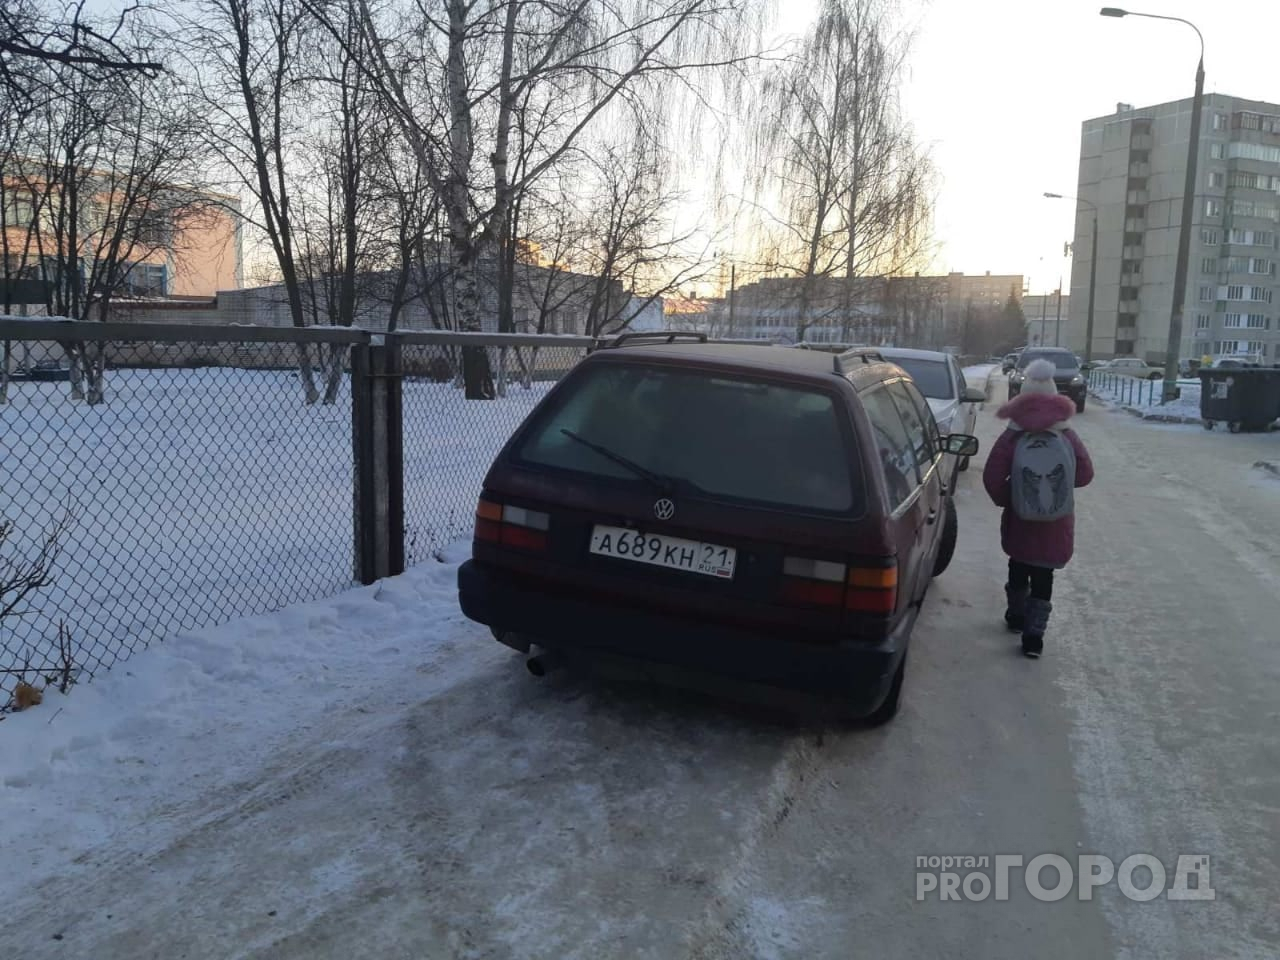 Новочебоксарские автолюбители захватили тротуар, "выгнав" детей на проезжую часть